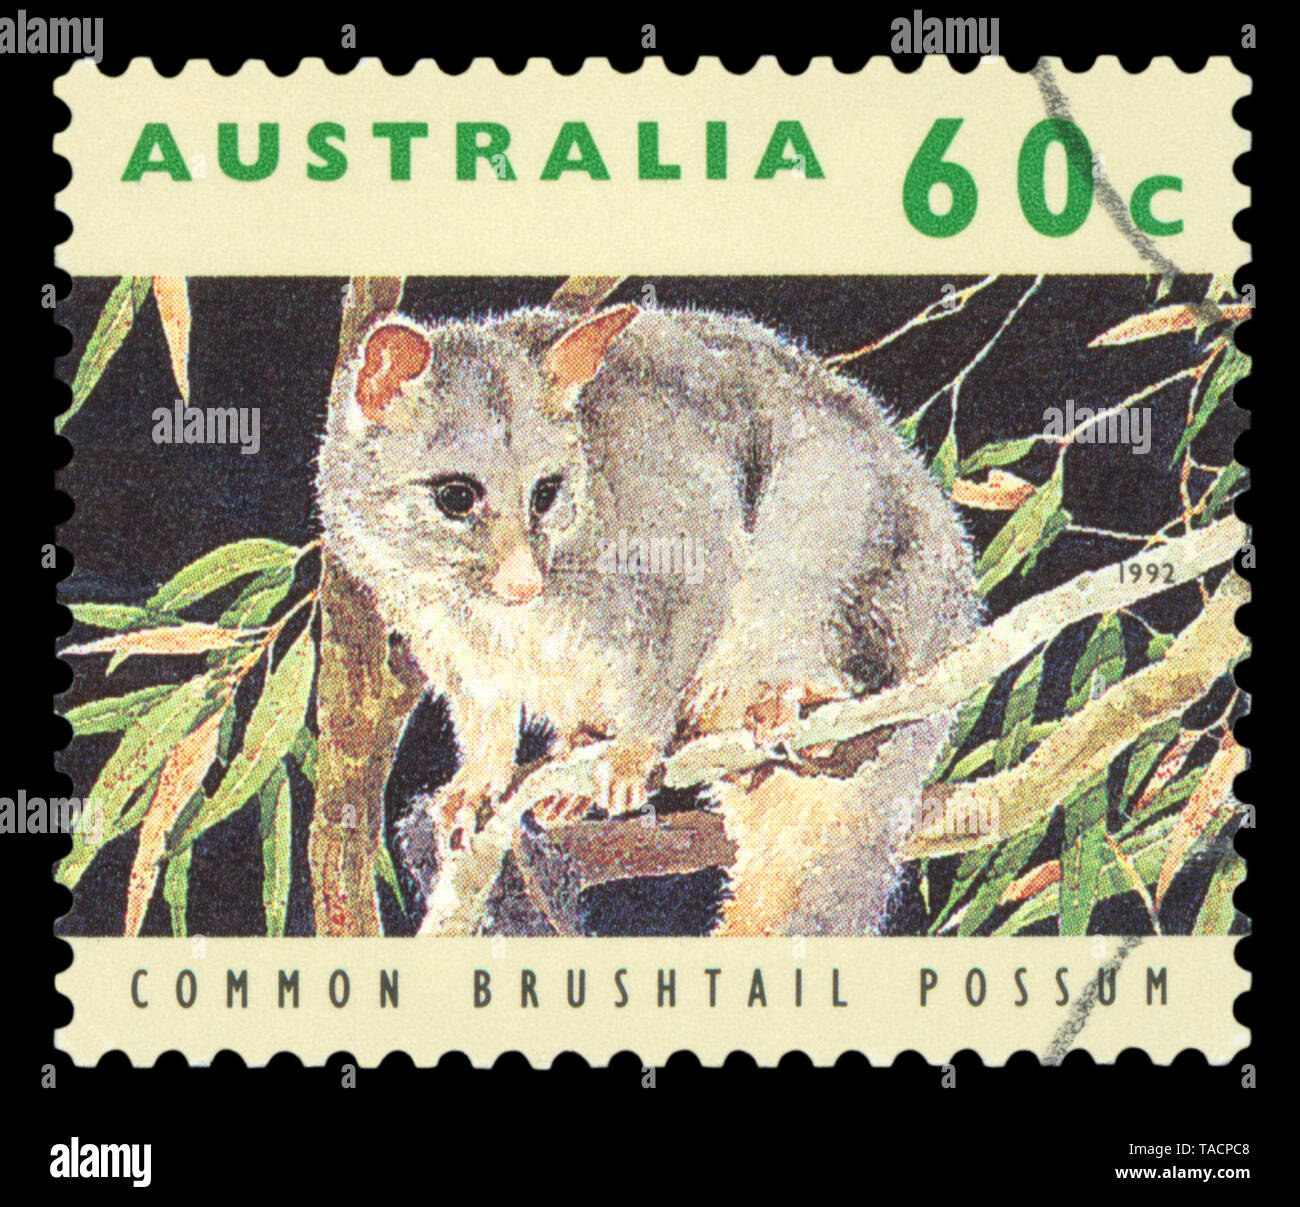 Australien - ca. 1992: einen Stempel in Australien gedruckten zeigt Gemeinsame Brushtail Possum, tierischen Serie, ca. 1992. Stockfoto